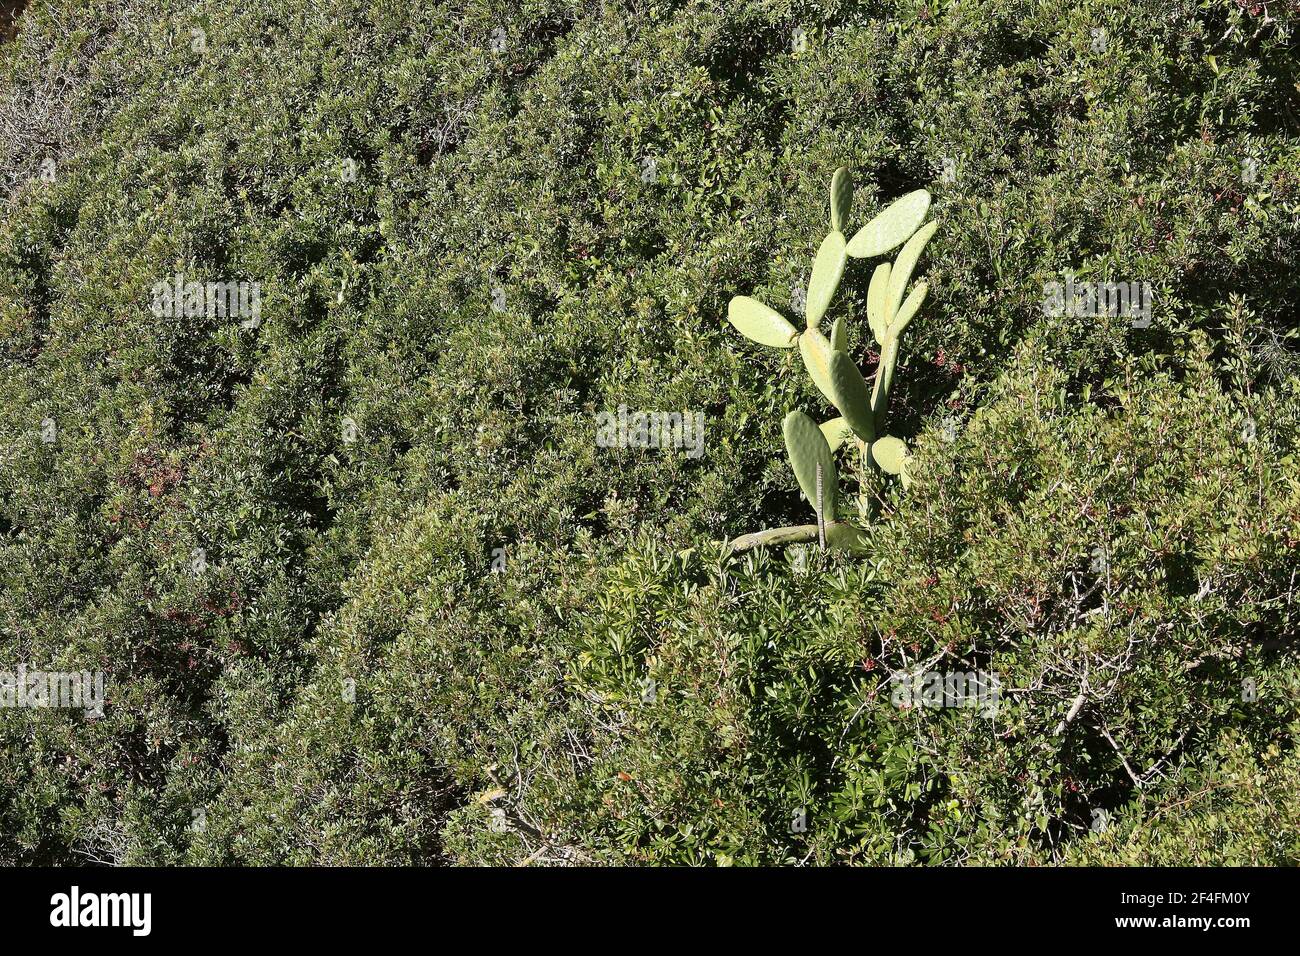 Cactus sur un côté d'une colline en bord de mer Ville de Lloret de Mar sur la Costa Brava près Calella en Catalogne Espagne UE 2019 Banque D'Images